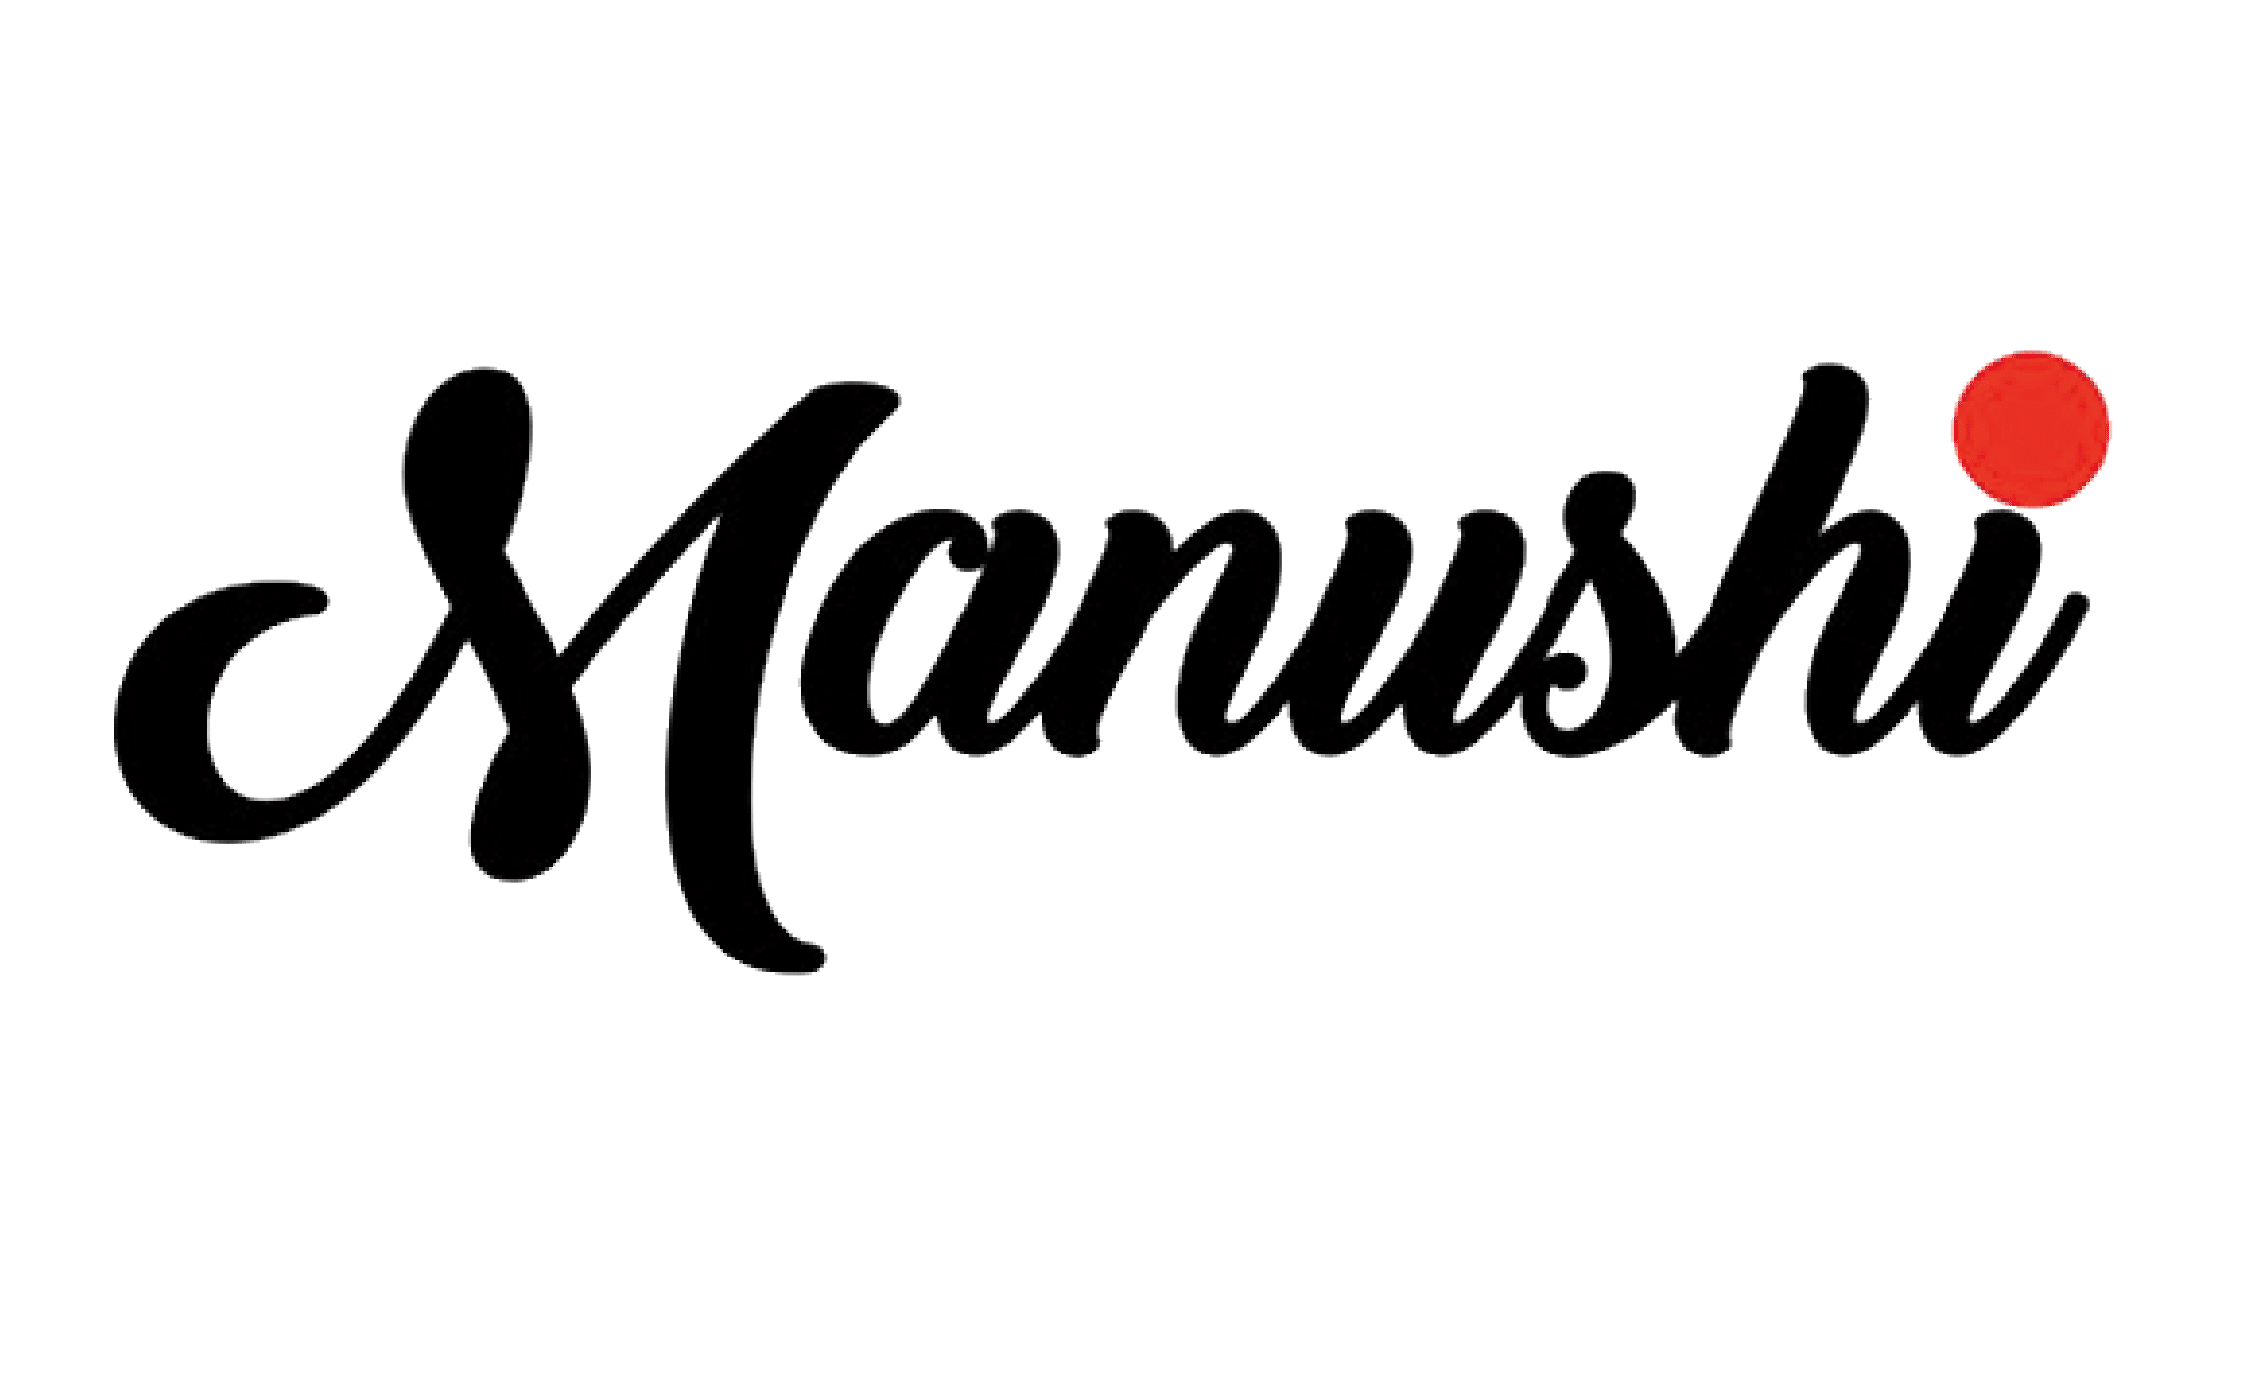 Manushi